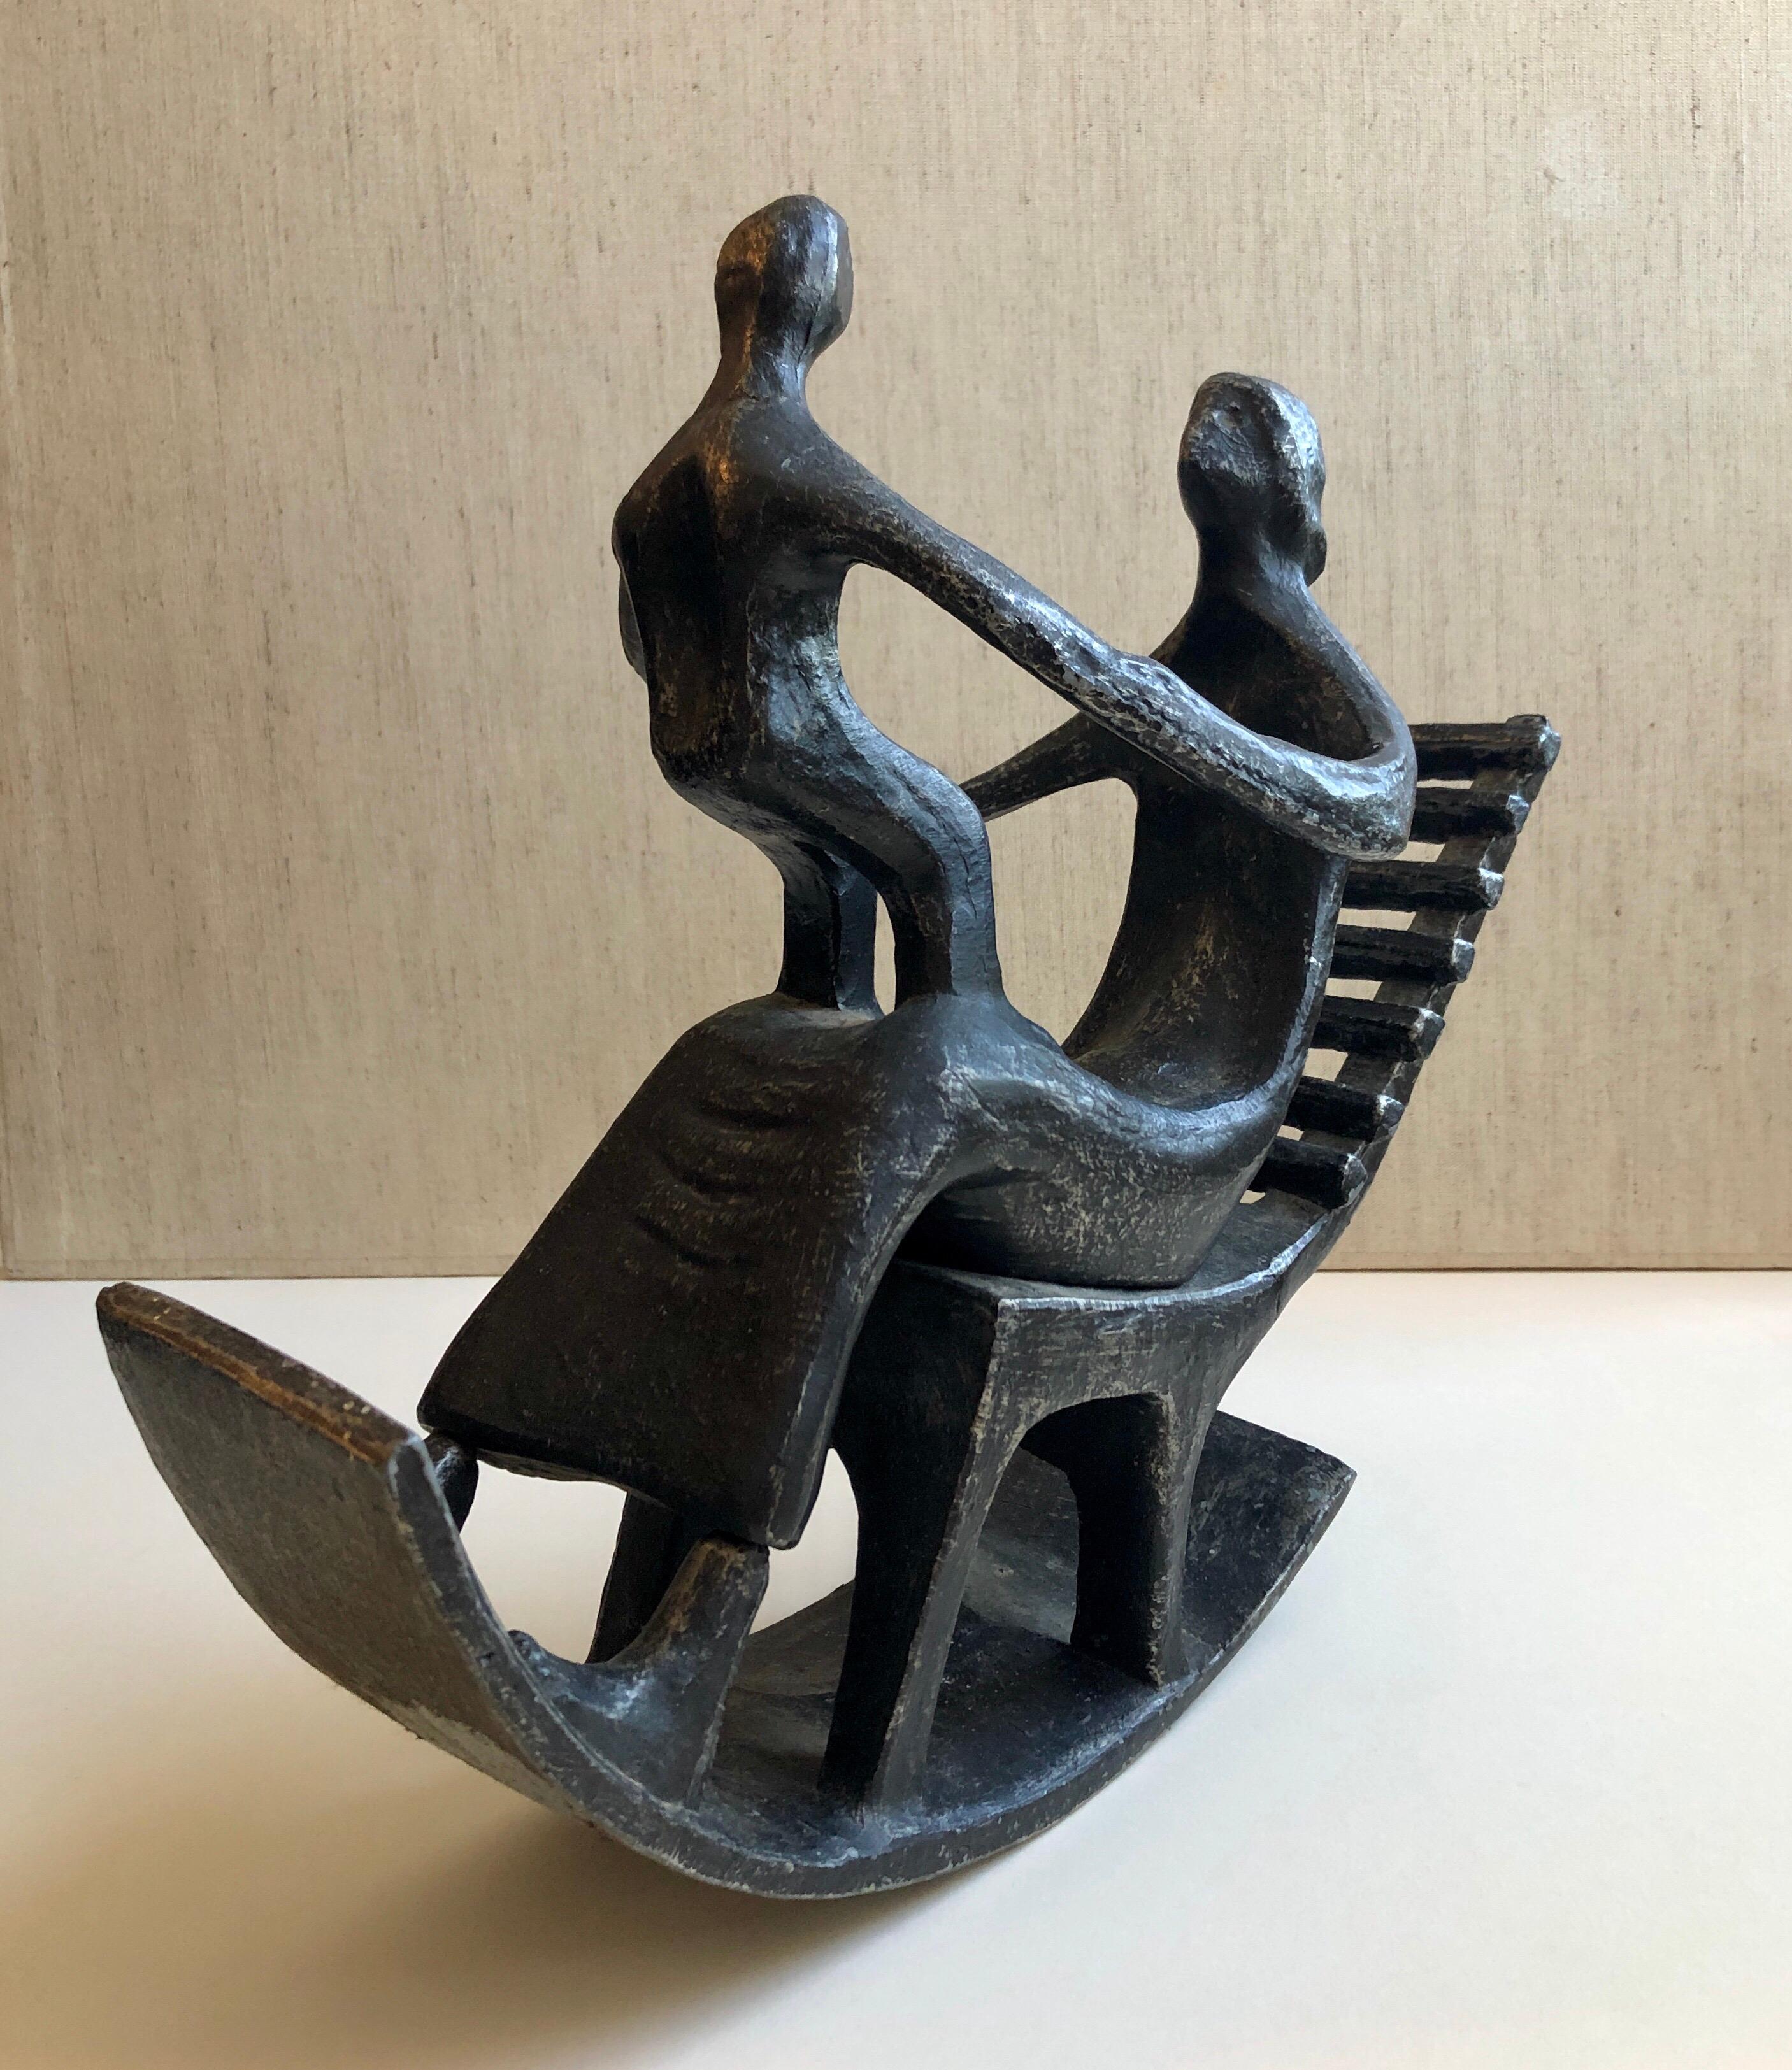 Il s'agit d'une sculpture en métal moulé représentant une femme et son enfant, une mère et son bébé dans un fauteuil à bascule. Il présente une patine sur un métal blanc. On ne sait pas s'il s'agit d'acier ou d'aluminium. C'est une pièce vintage